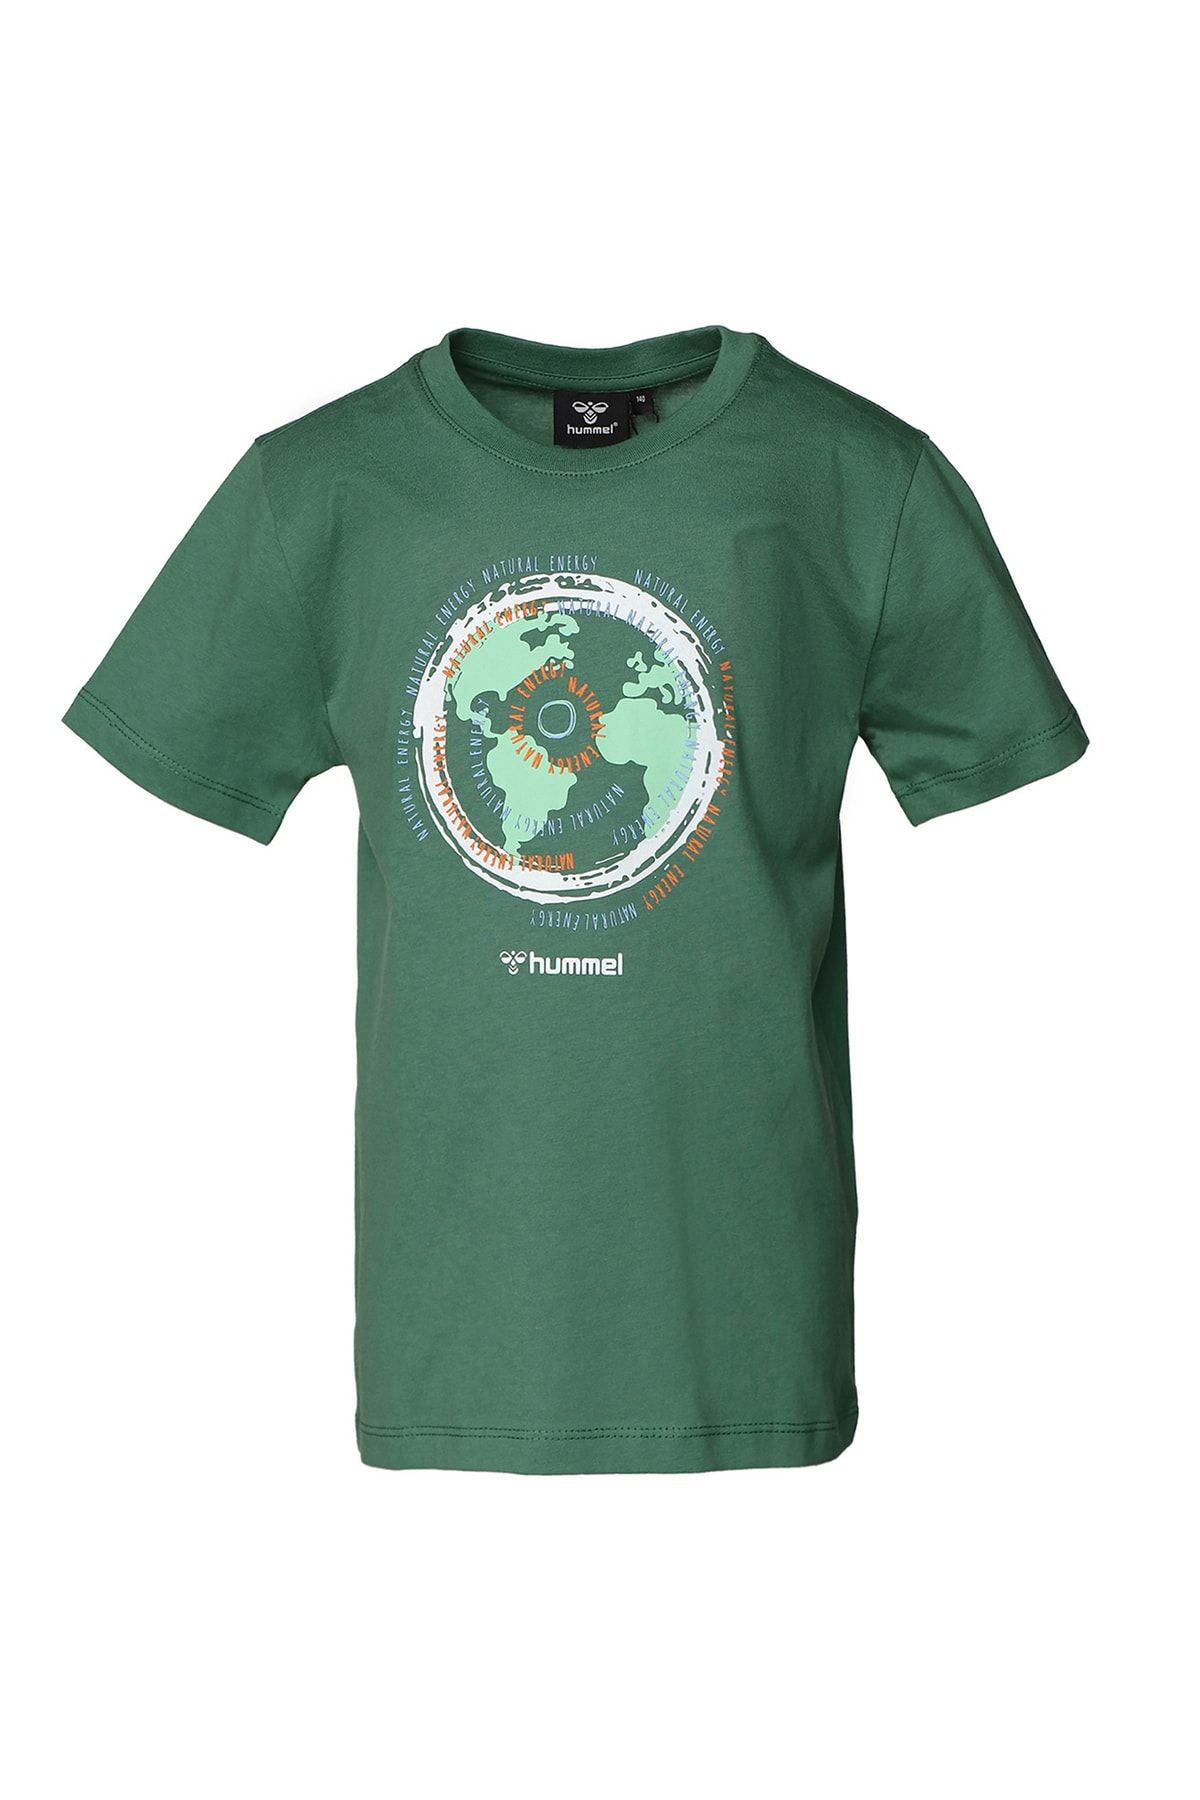 hummel Baskılı Yeşil Erkek Çocuk T-shirt 911678-6110 Hmlolaf T-shırt S/s